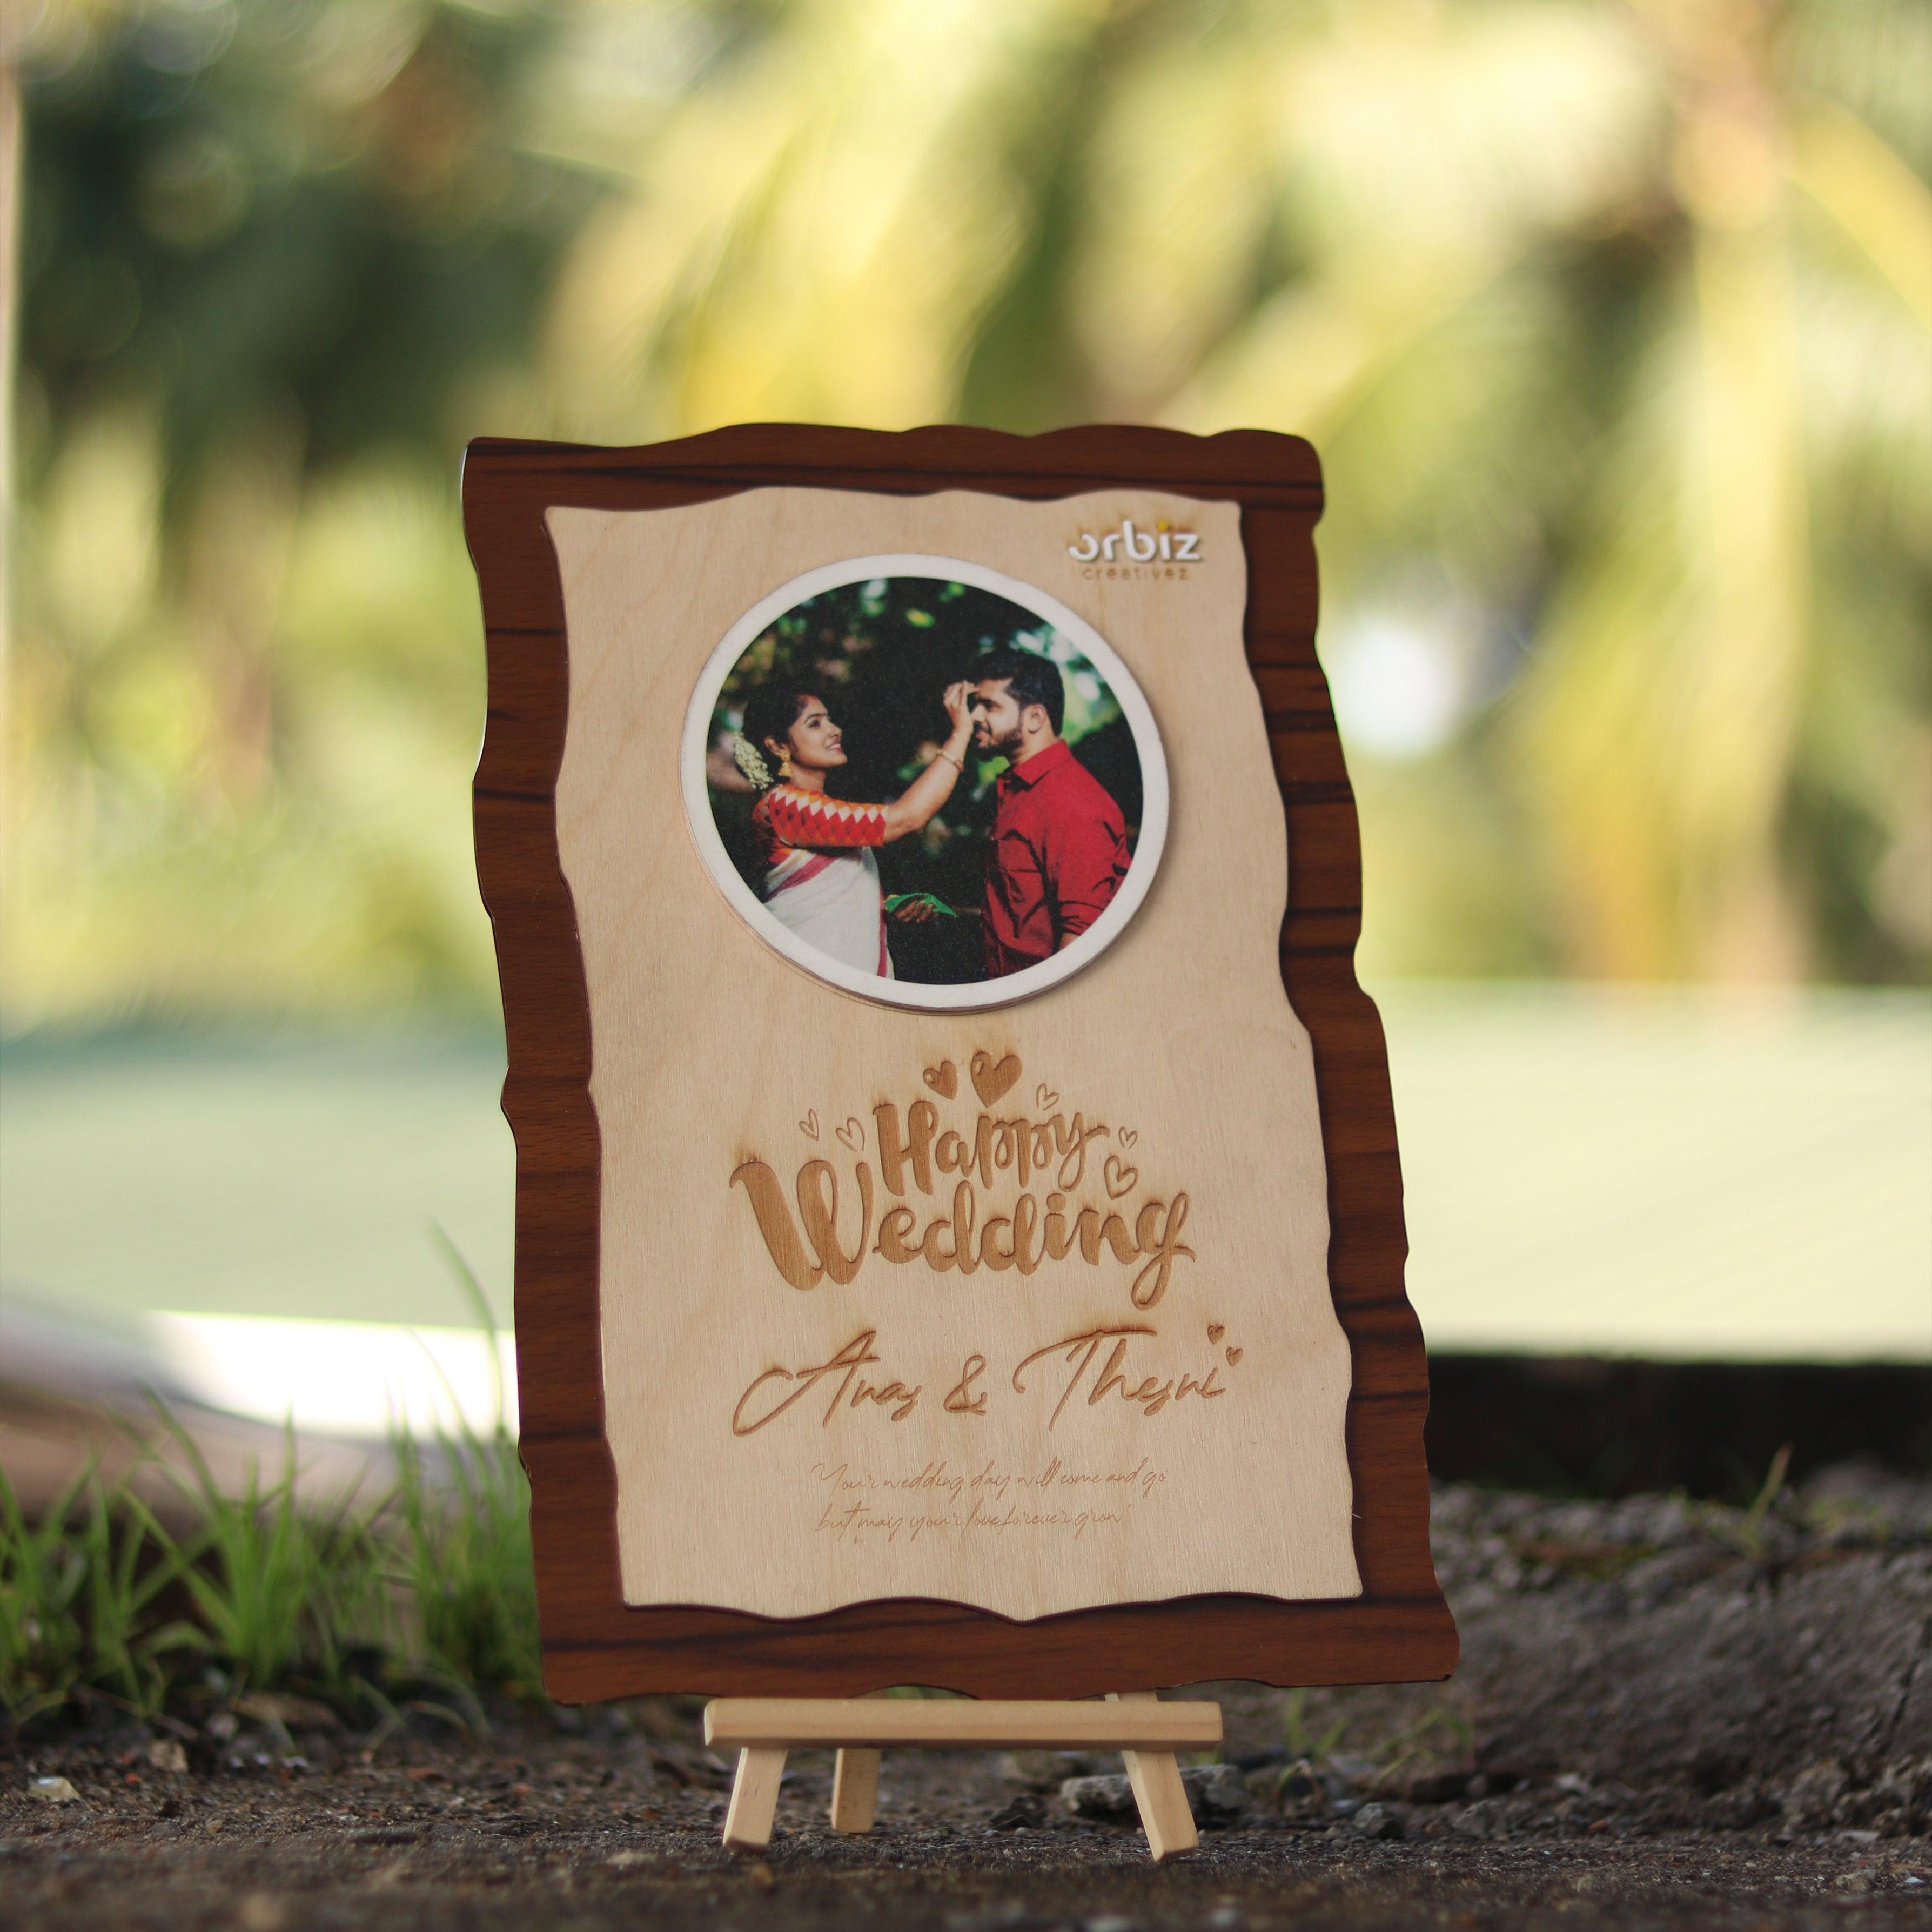 Customized Wedding Photo Frame - Orbiz Creativez